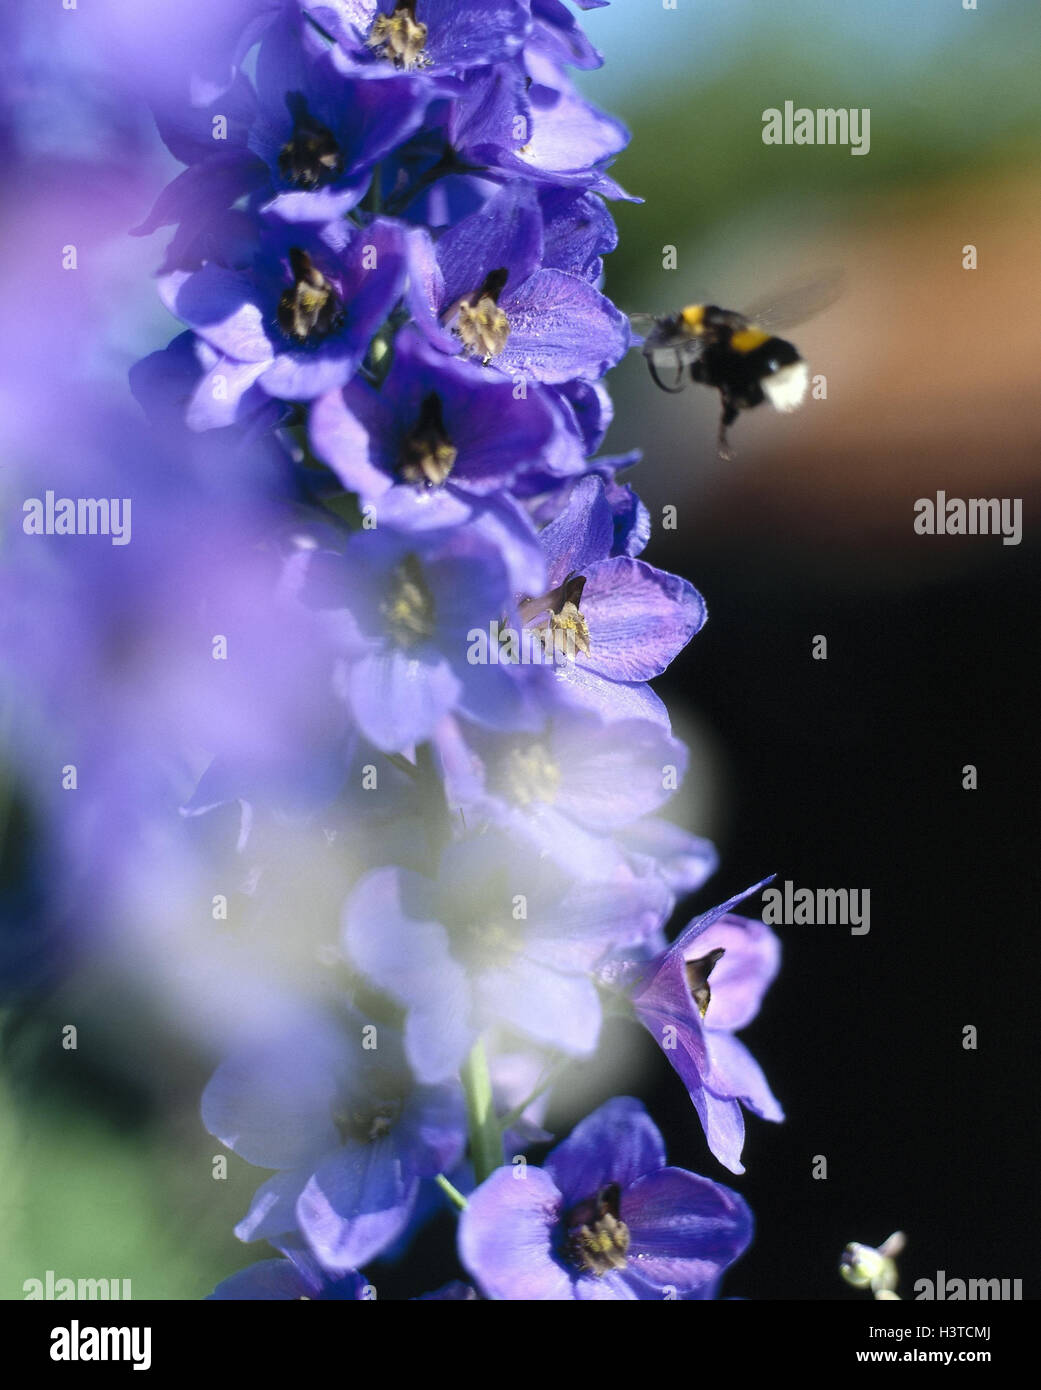 Larkspur, Delphinium spec., detail, blossoms, bumblebee, outside, summer, crowfoot plants, flower, flowers, blossom, plants, nature, Bombus, mauve, close up Stock Photo